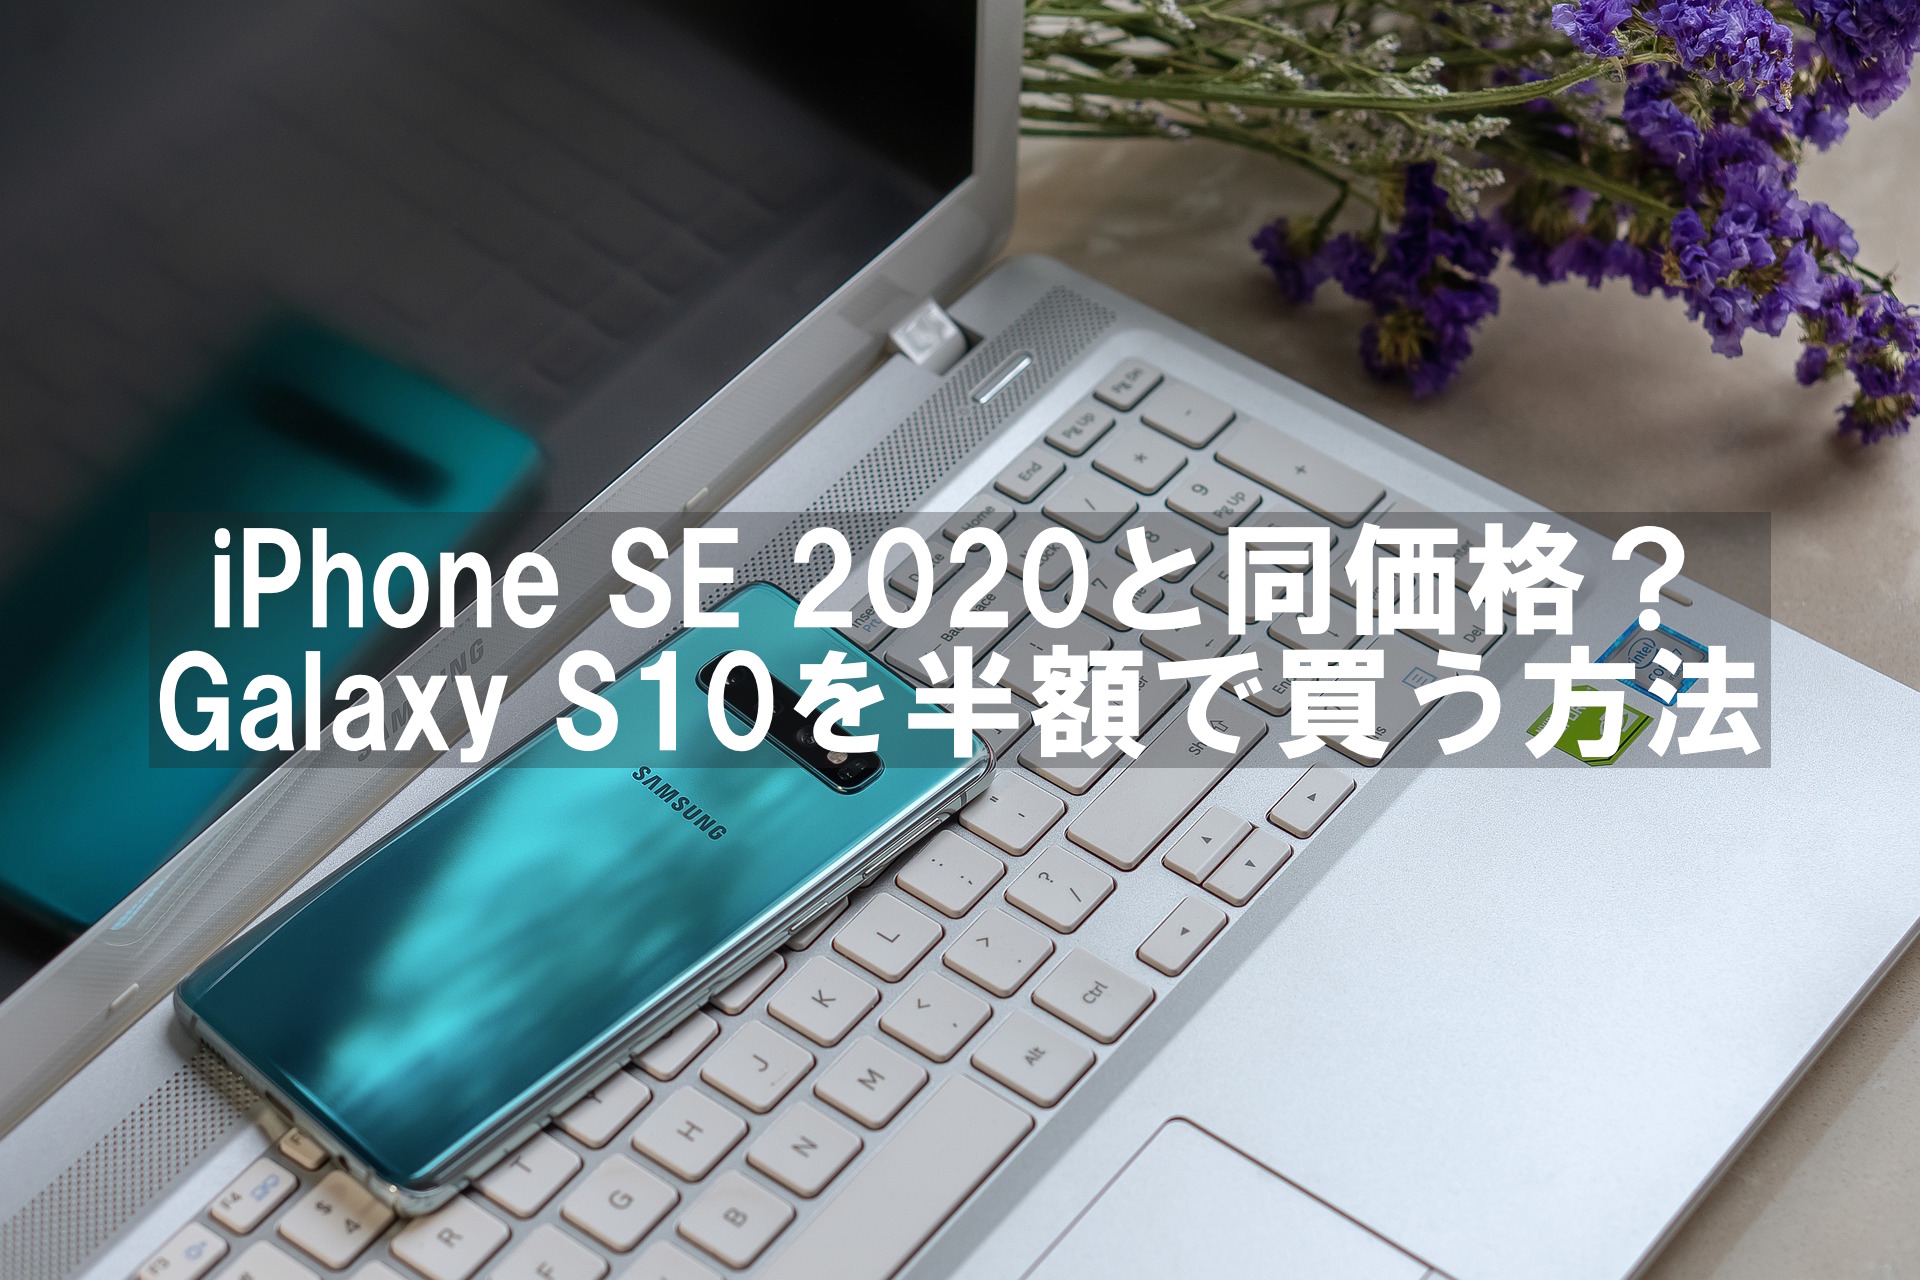 Iphone Se と同価格 Galaxy S10 シムフリー を半額で買う方法 ノースキルでカンボジアで起業 マレーシア起業 予定